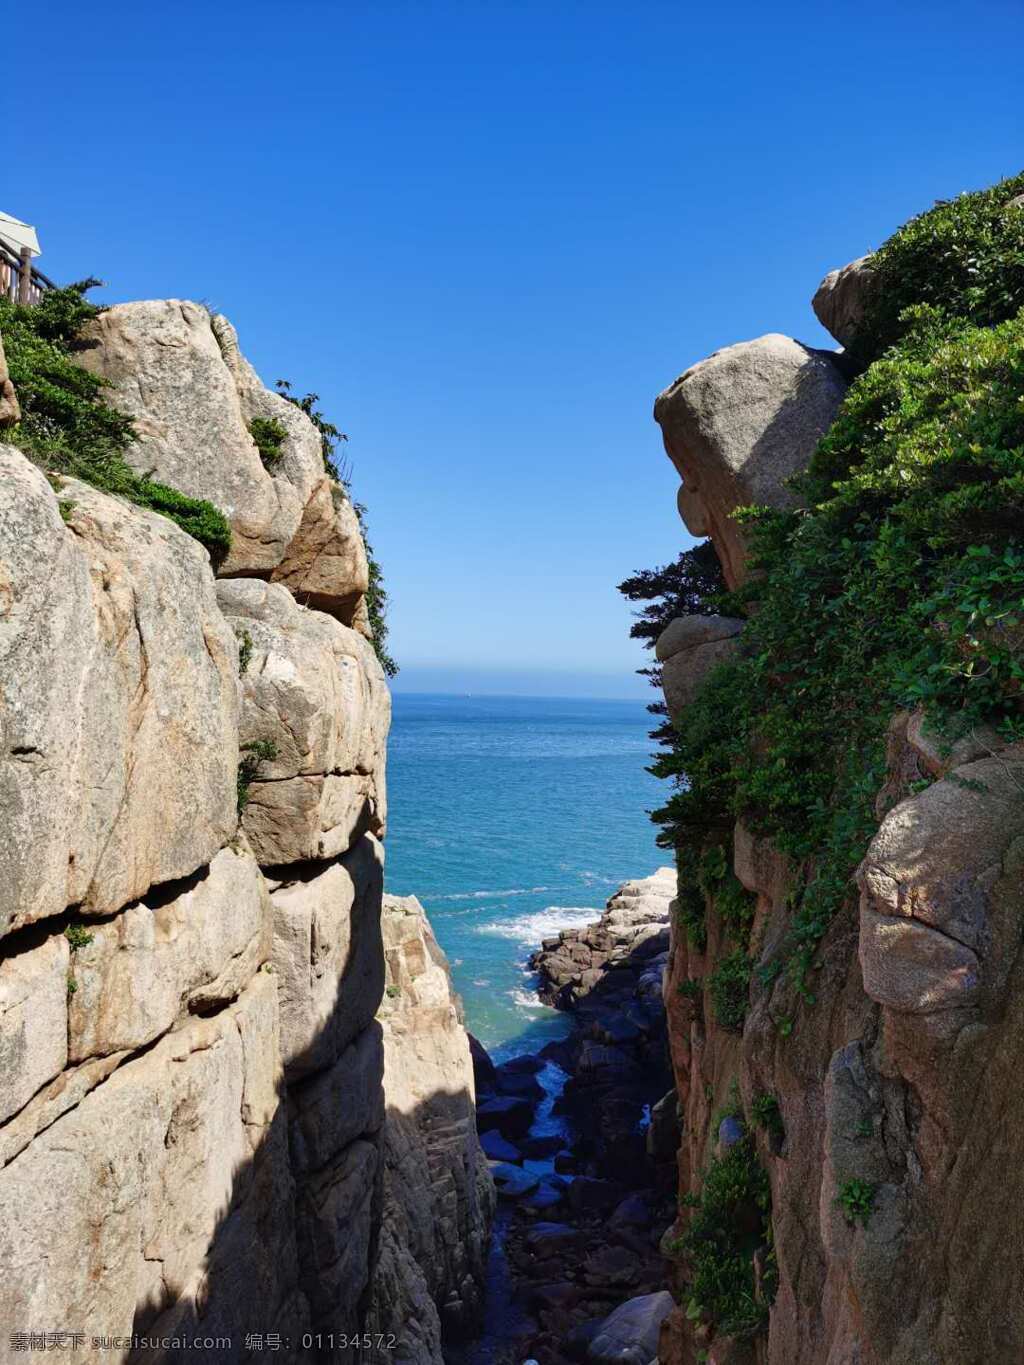 大海 山 石图片 石 浪漫 安静 大气 自然 景色 蓝天 浪 旅行 树木 自然景观 自然风光